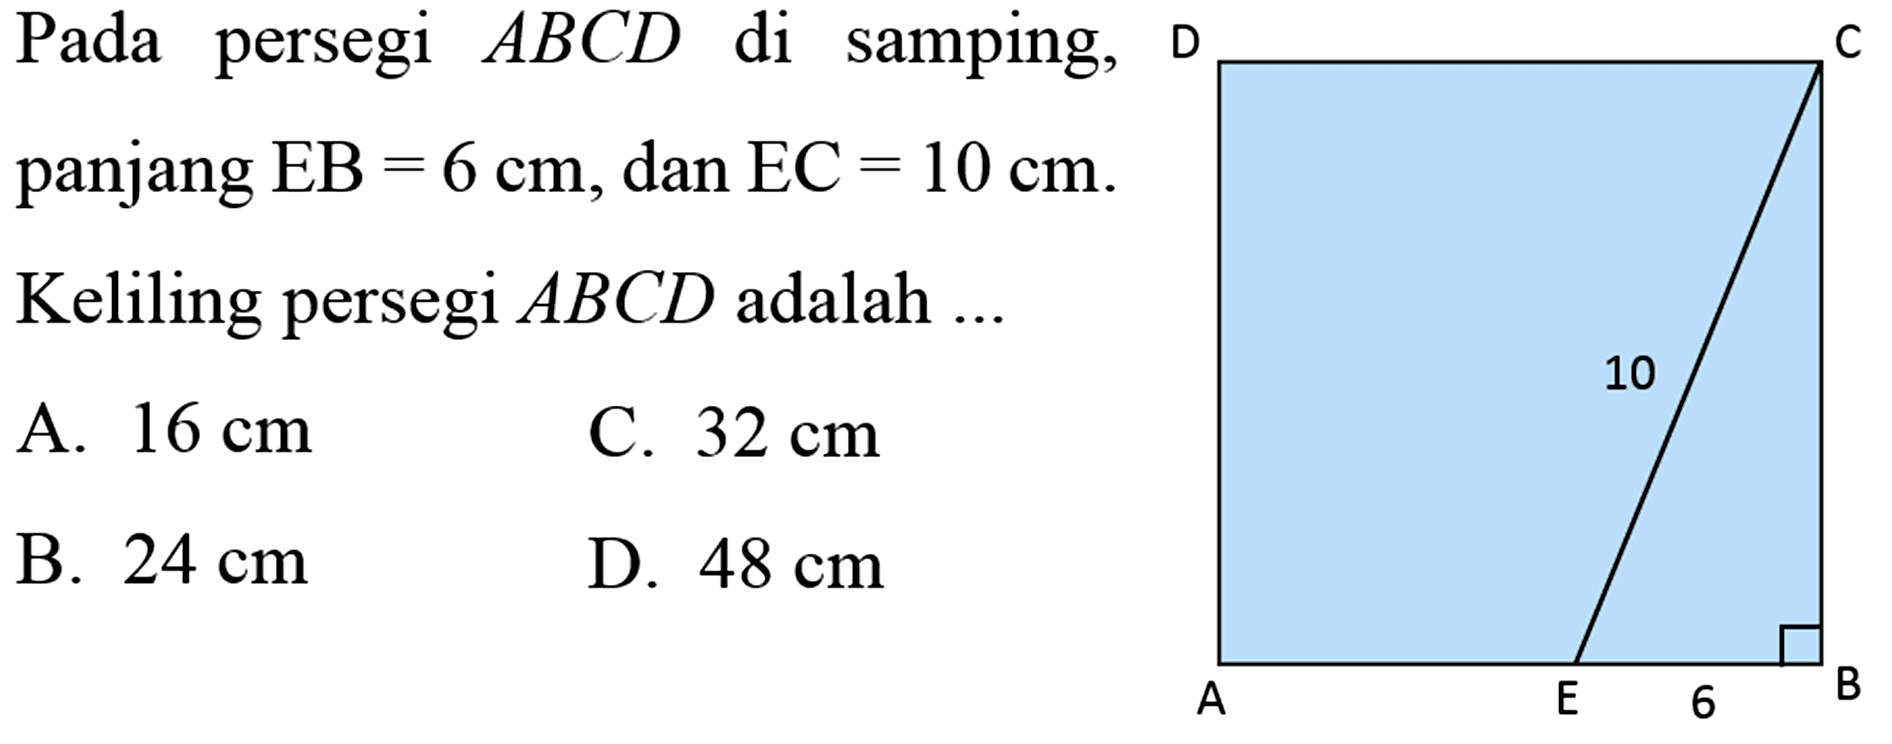 Pada persegi  ABCD  di samping,panjang  EB=6 cm , dan  EC=10 cm . Keliling persegi  ABCD  adalah  ...  D C 10 A E 6 BA.  16 cm B.  24 cm C.  32 cm D.  48 cm 